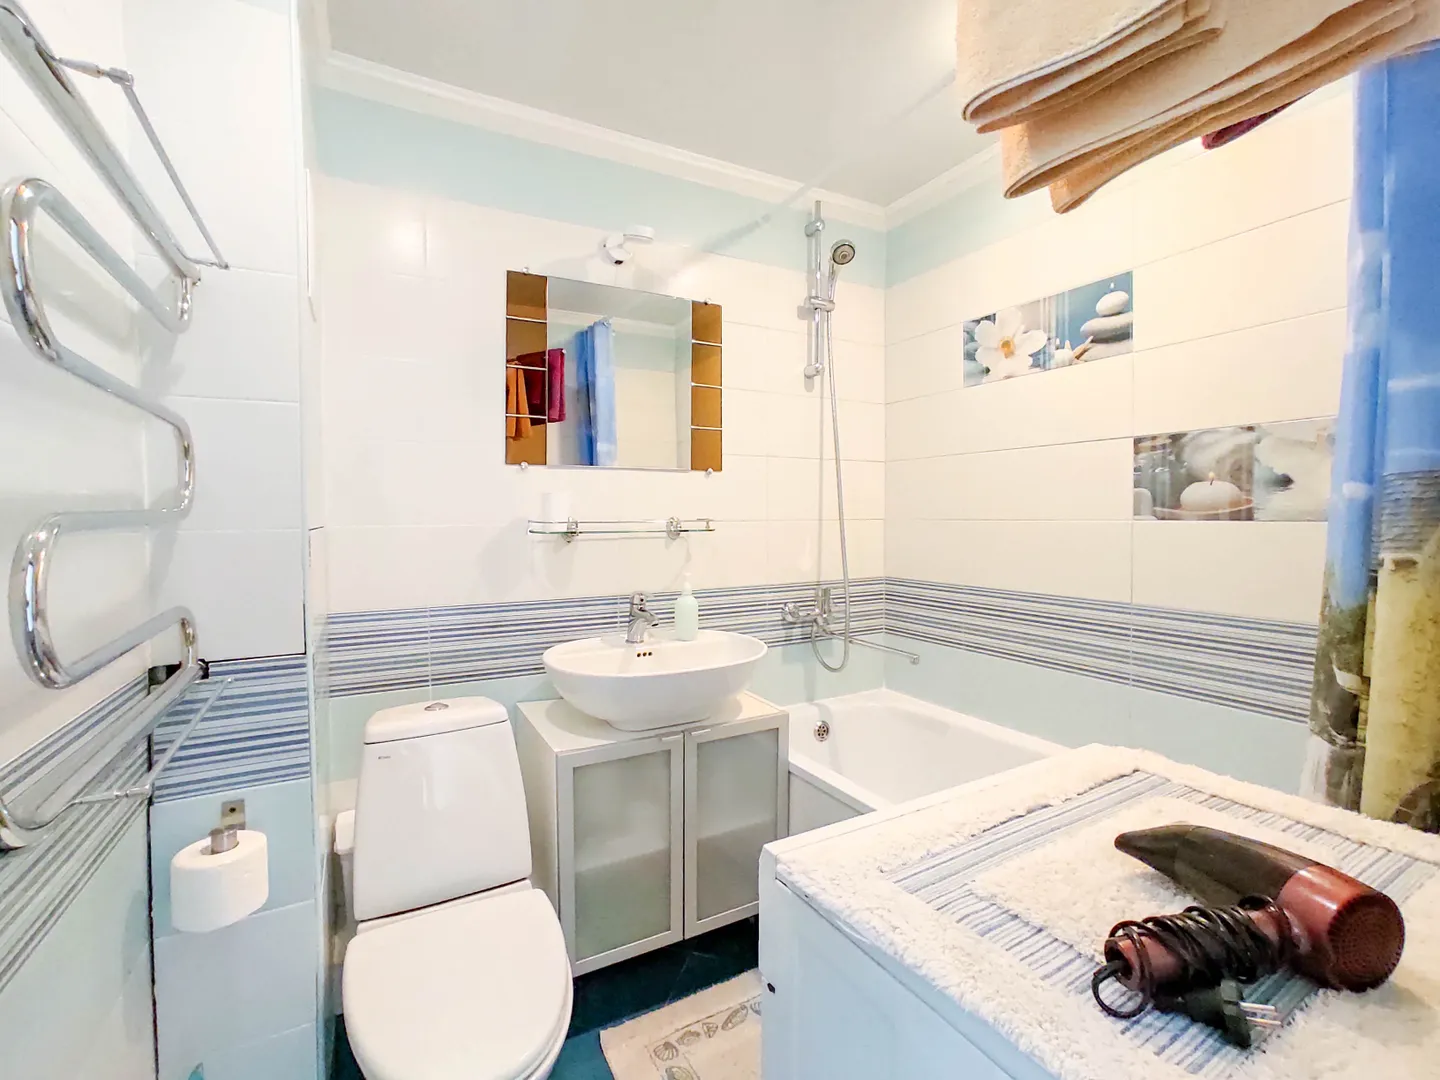 Ванная: стиральная машина, полотенца, фен, запас туалетной бумаги гигиенические принадлежности в шкафчике под раковиной